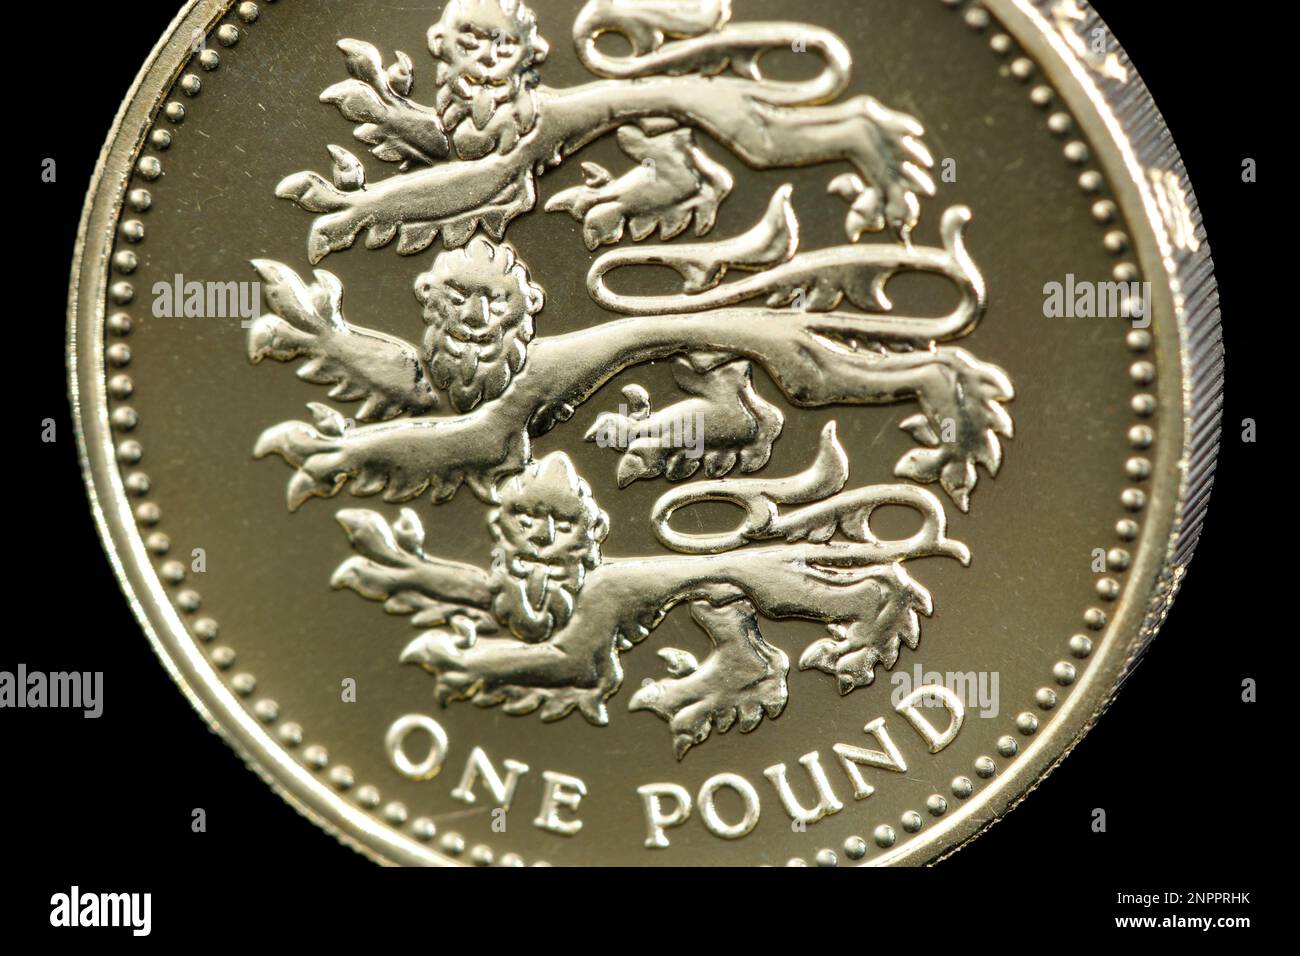 2002 épreuve £1 mettant en vedette les 3 Lions qui représentent l'Angleterre. Les trois lions remontent à Richard cœur de lion (1189-1199) Banque D'Images